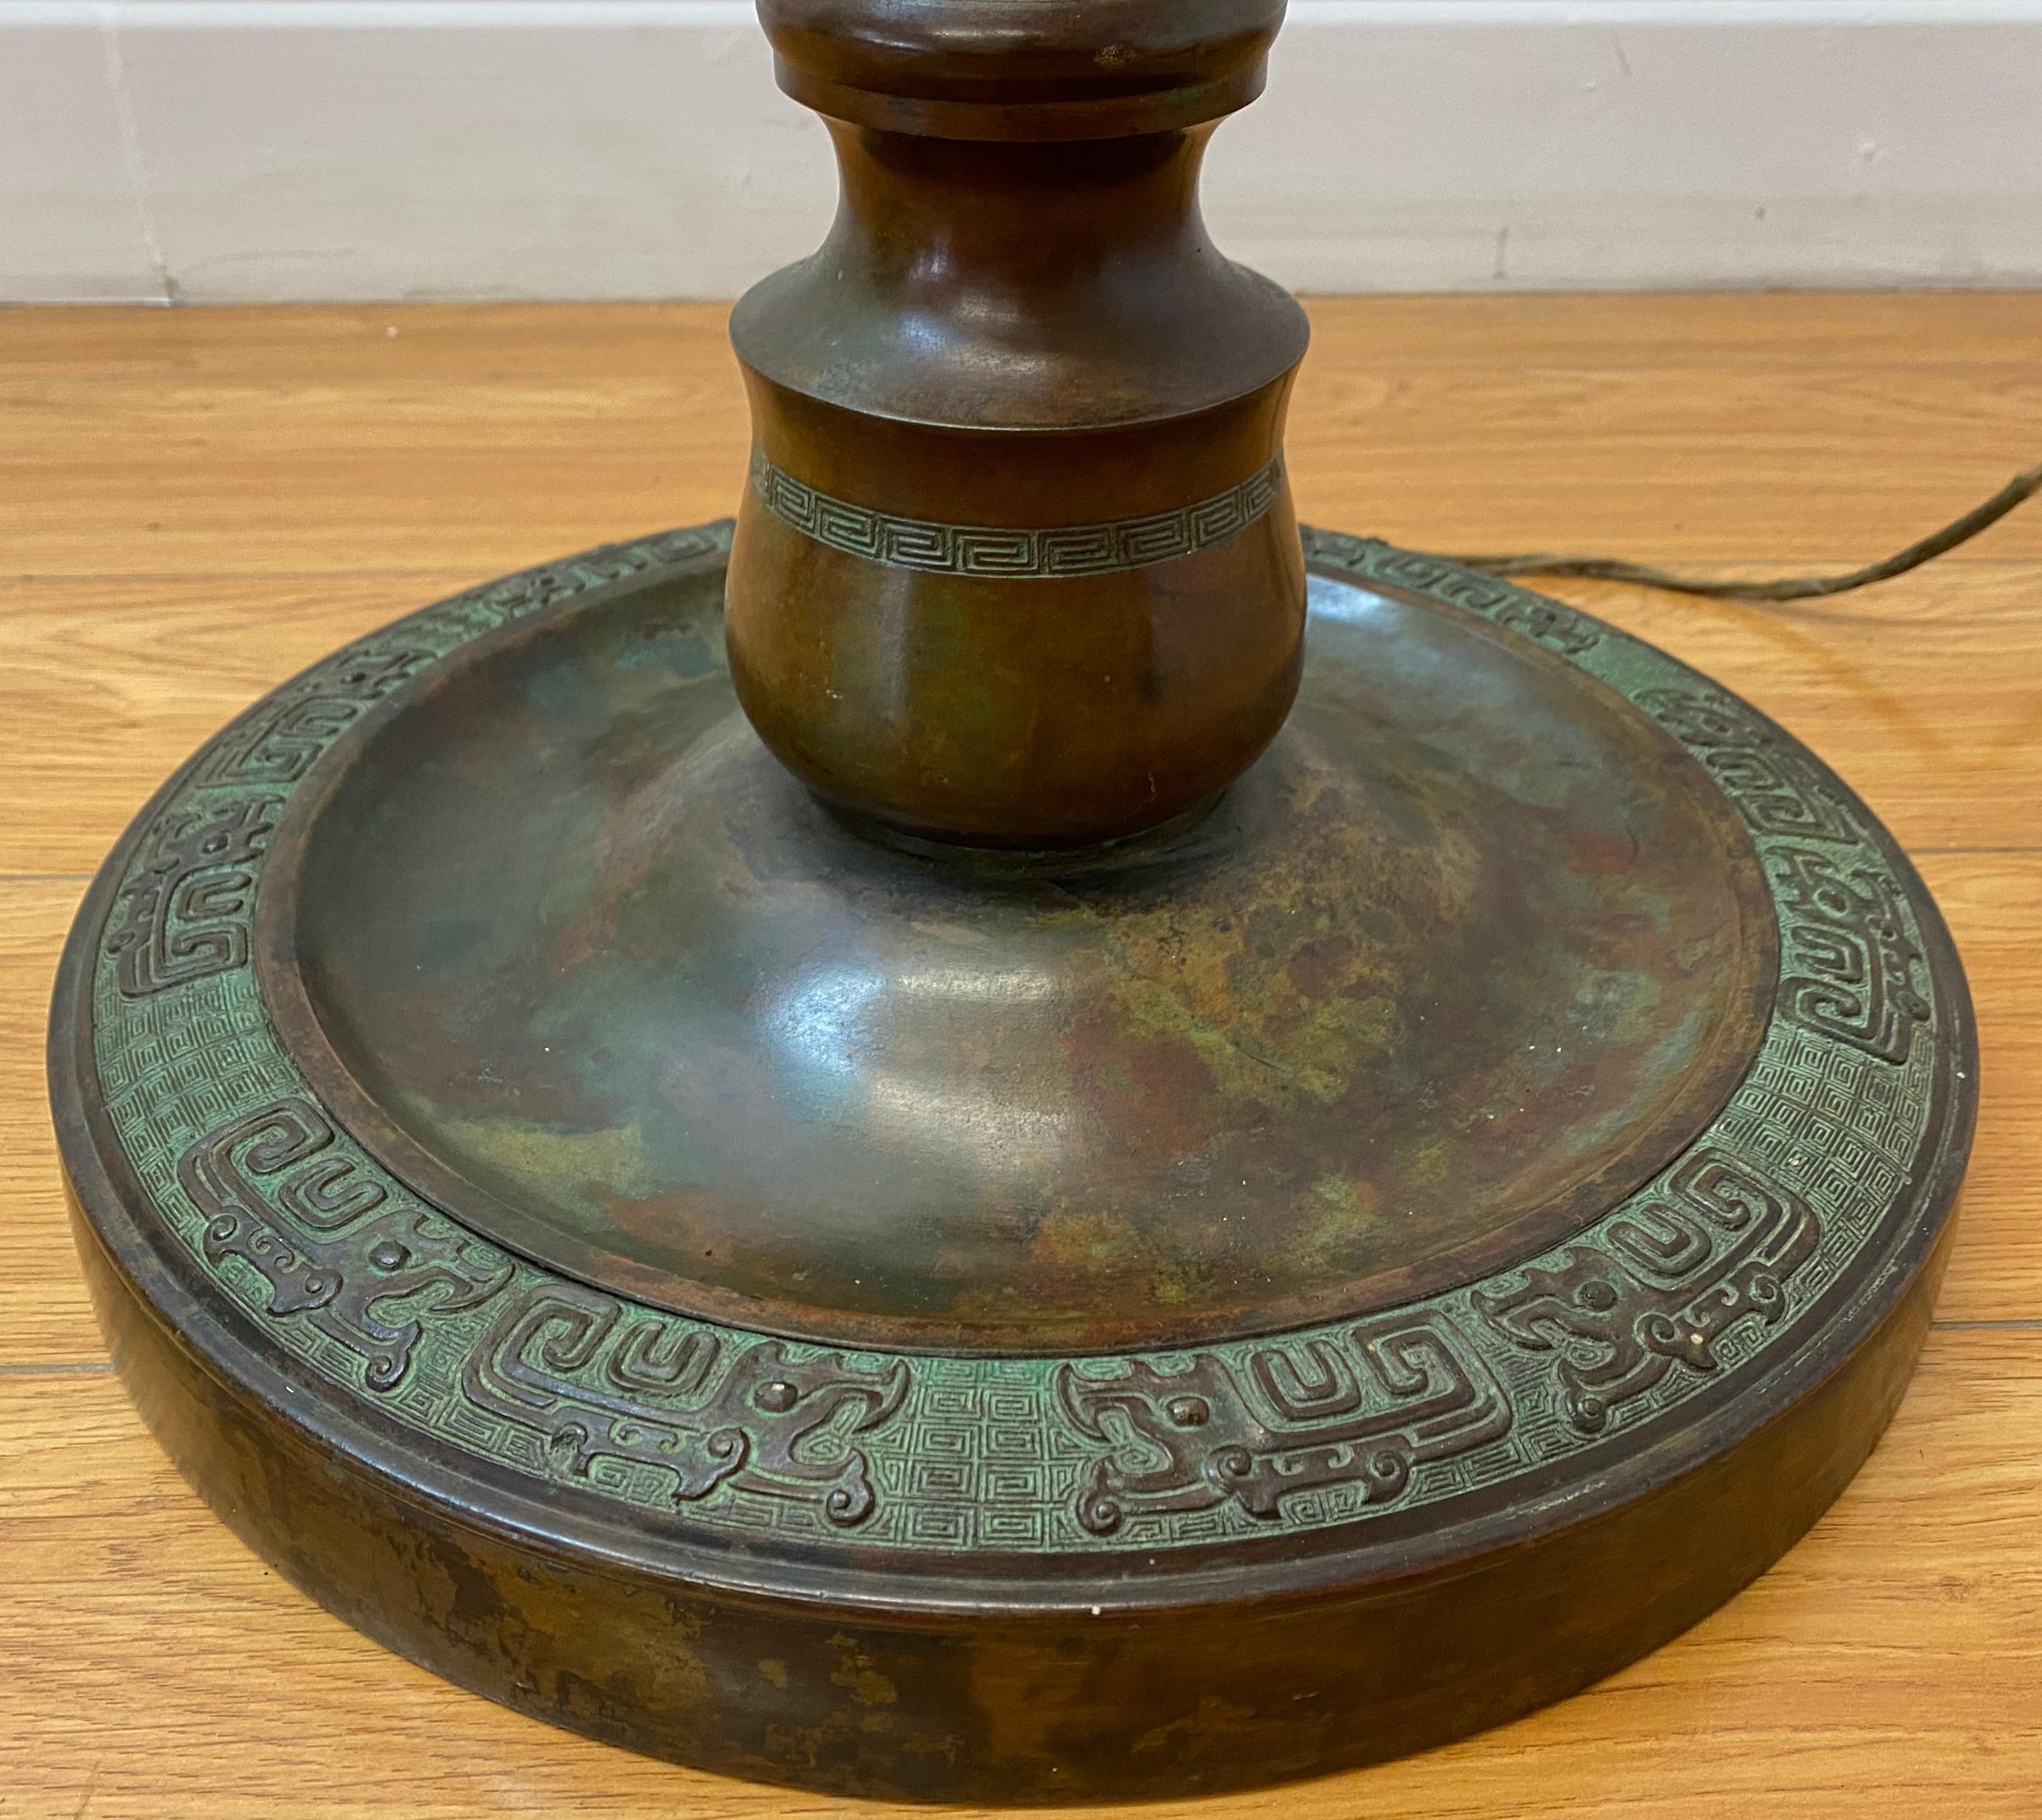 Lampadaire en bronze coulé du début du 20e siècle avec motif chinois néolithique

13